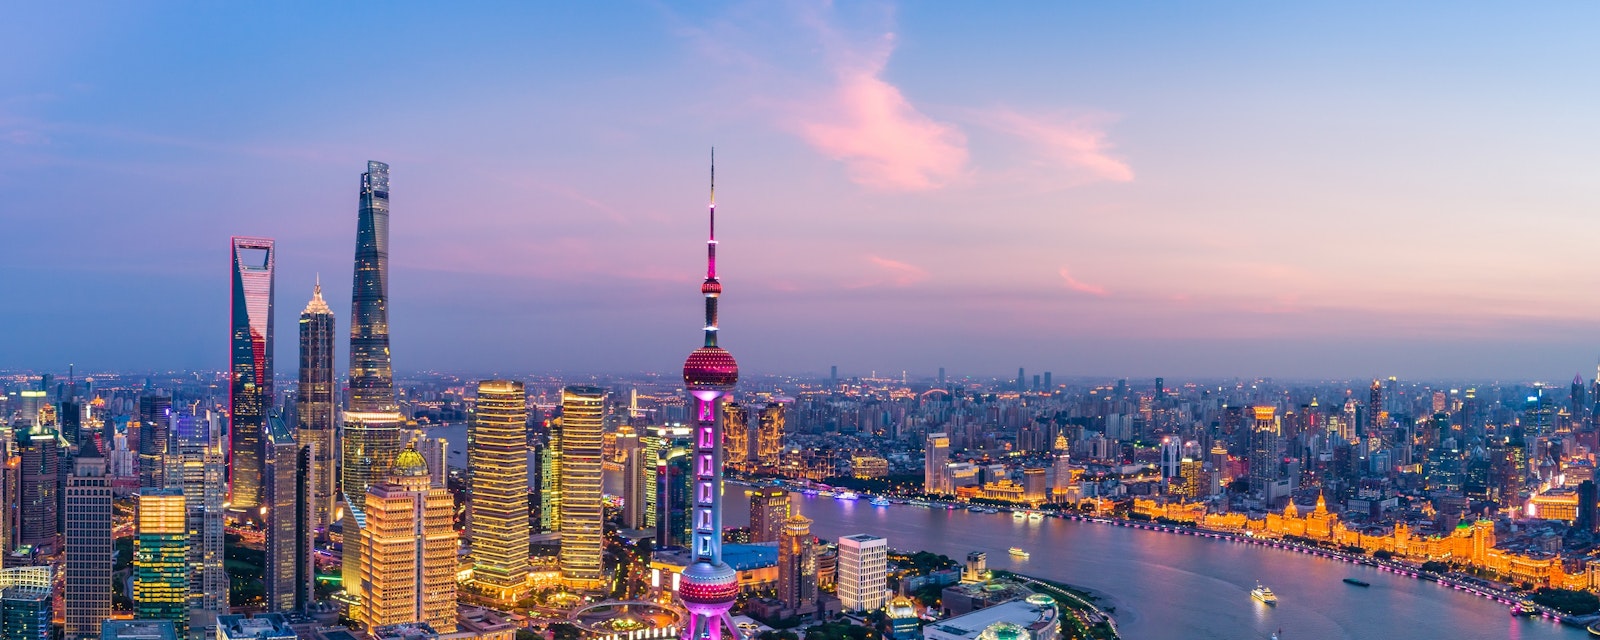 Aerial,Panoramic,View,Of,Shanghai,Skyline,At,Night,china.